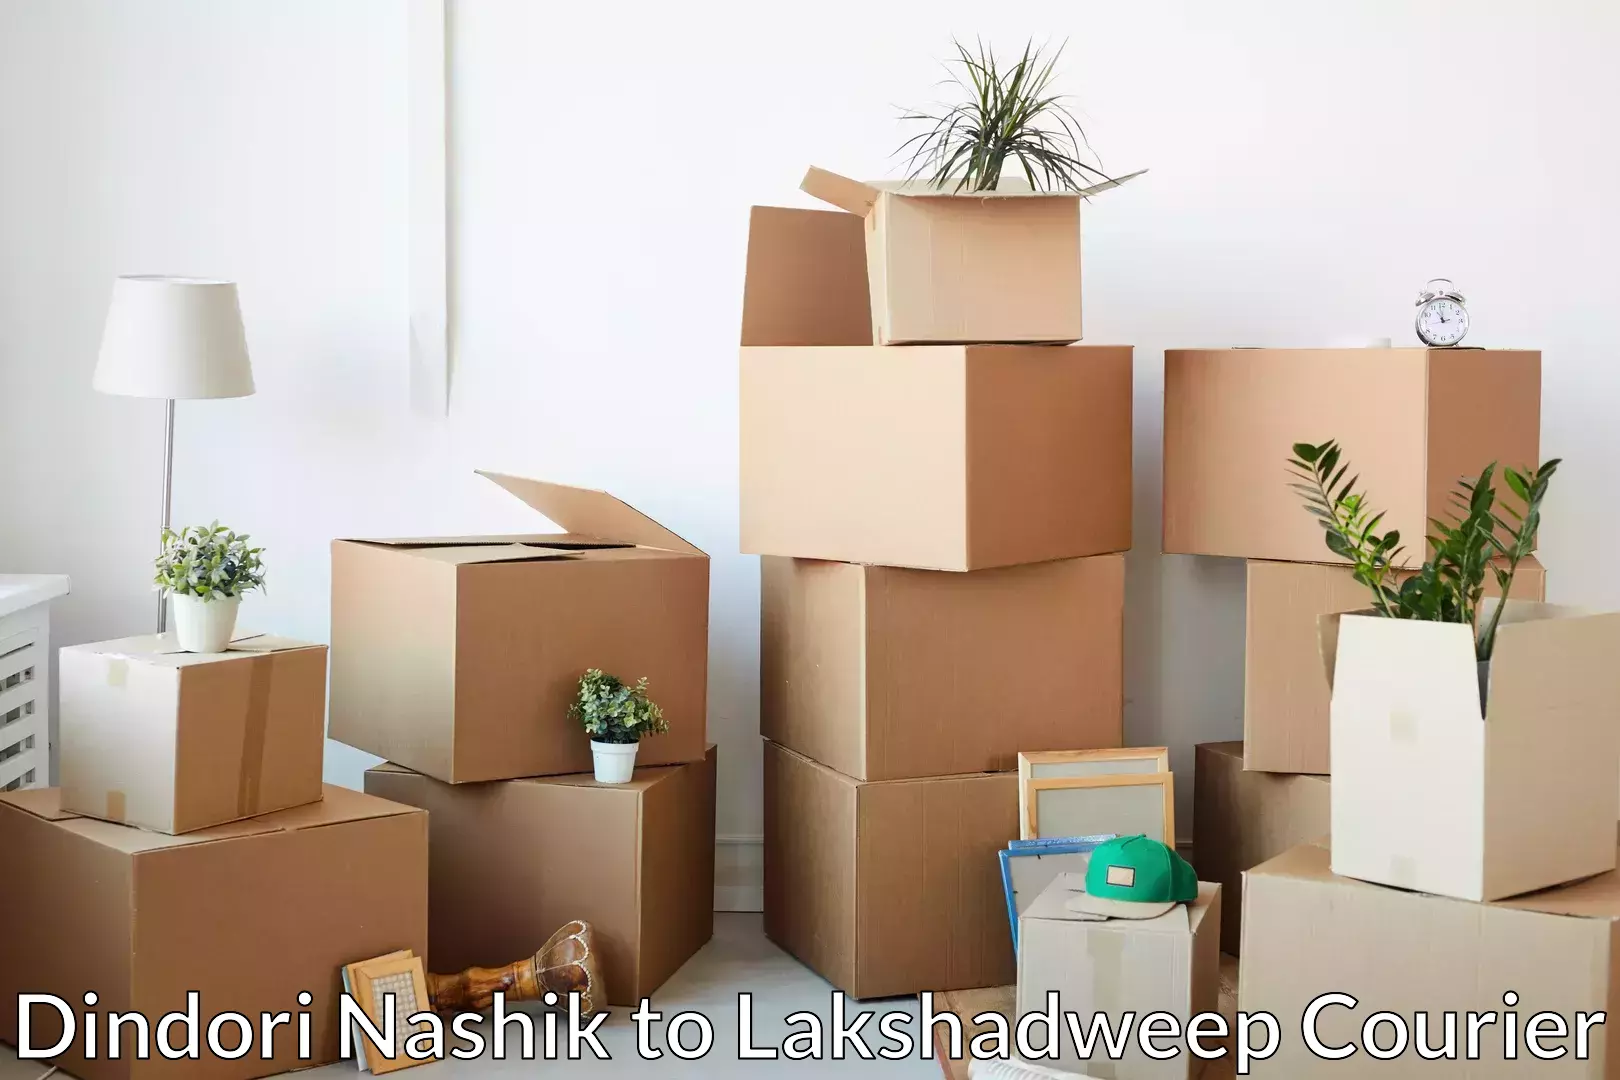 Furniture shipping services Dindori Nashik to Lakshadweep